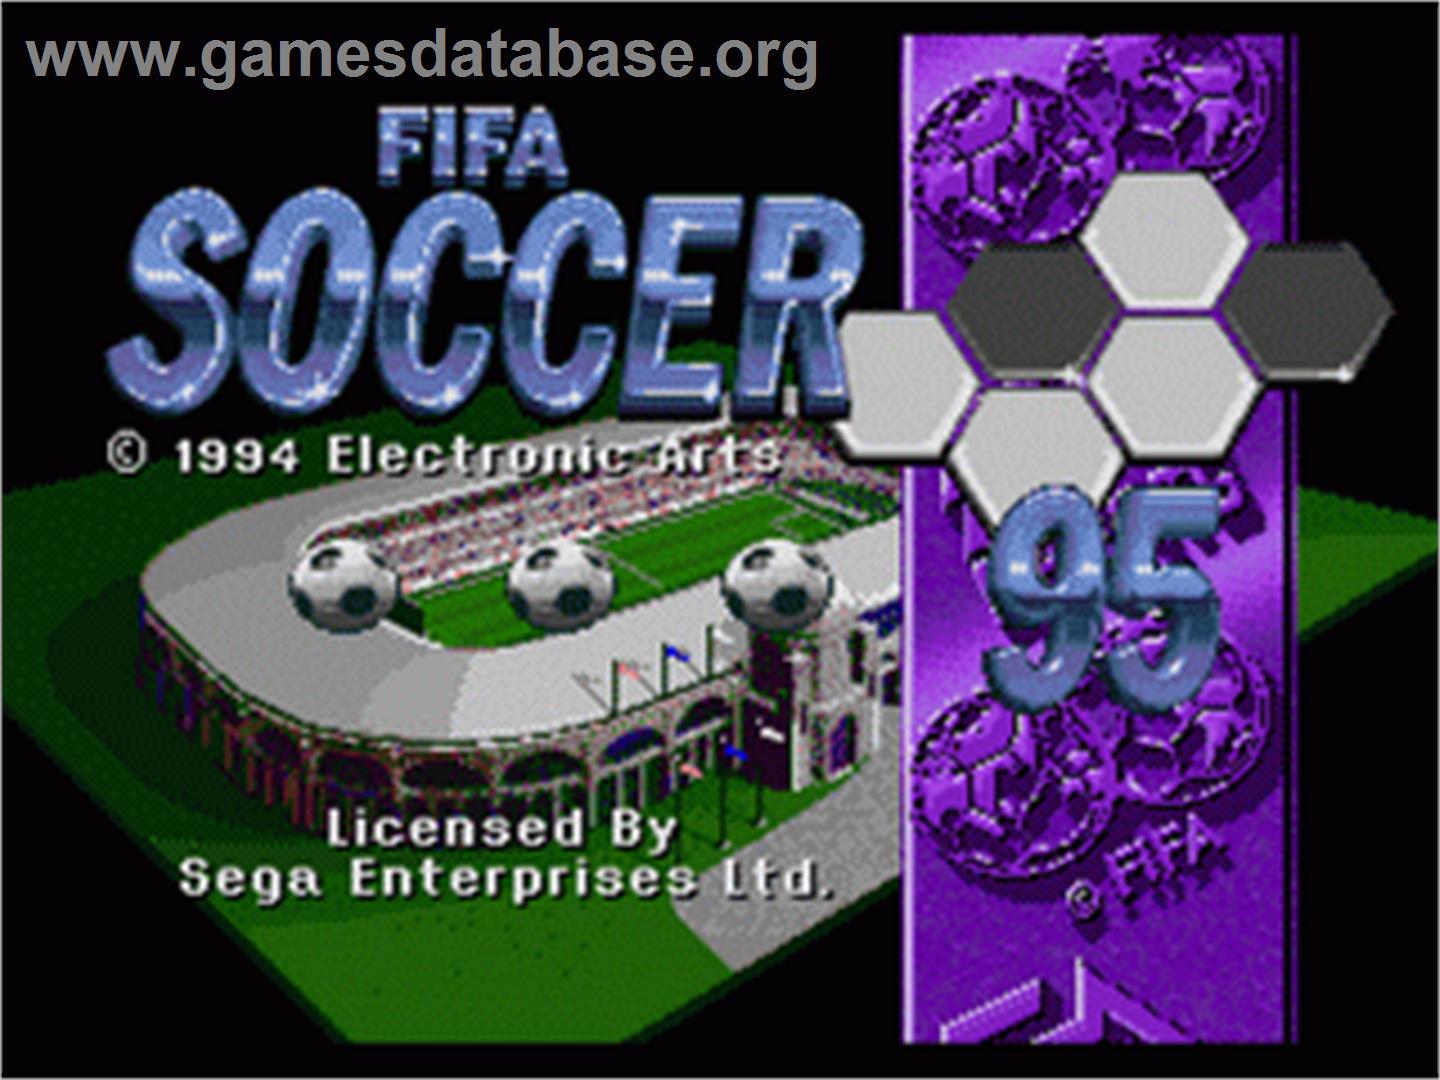 FIFA 95 - Sega Genesis - Artwork - Title Screen